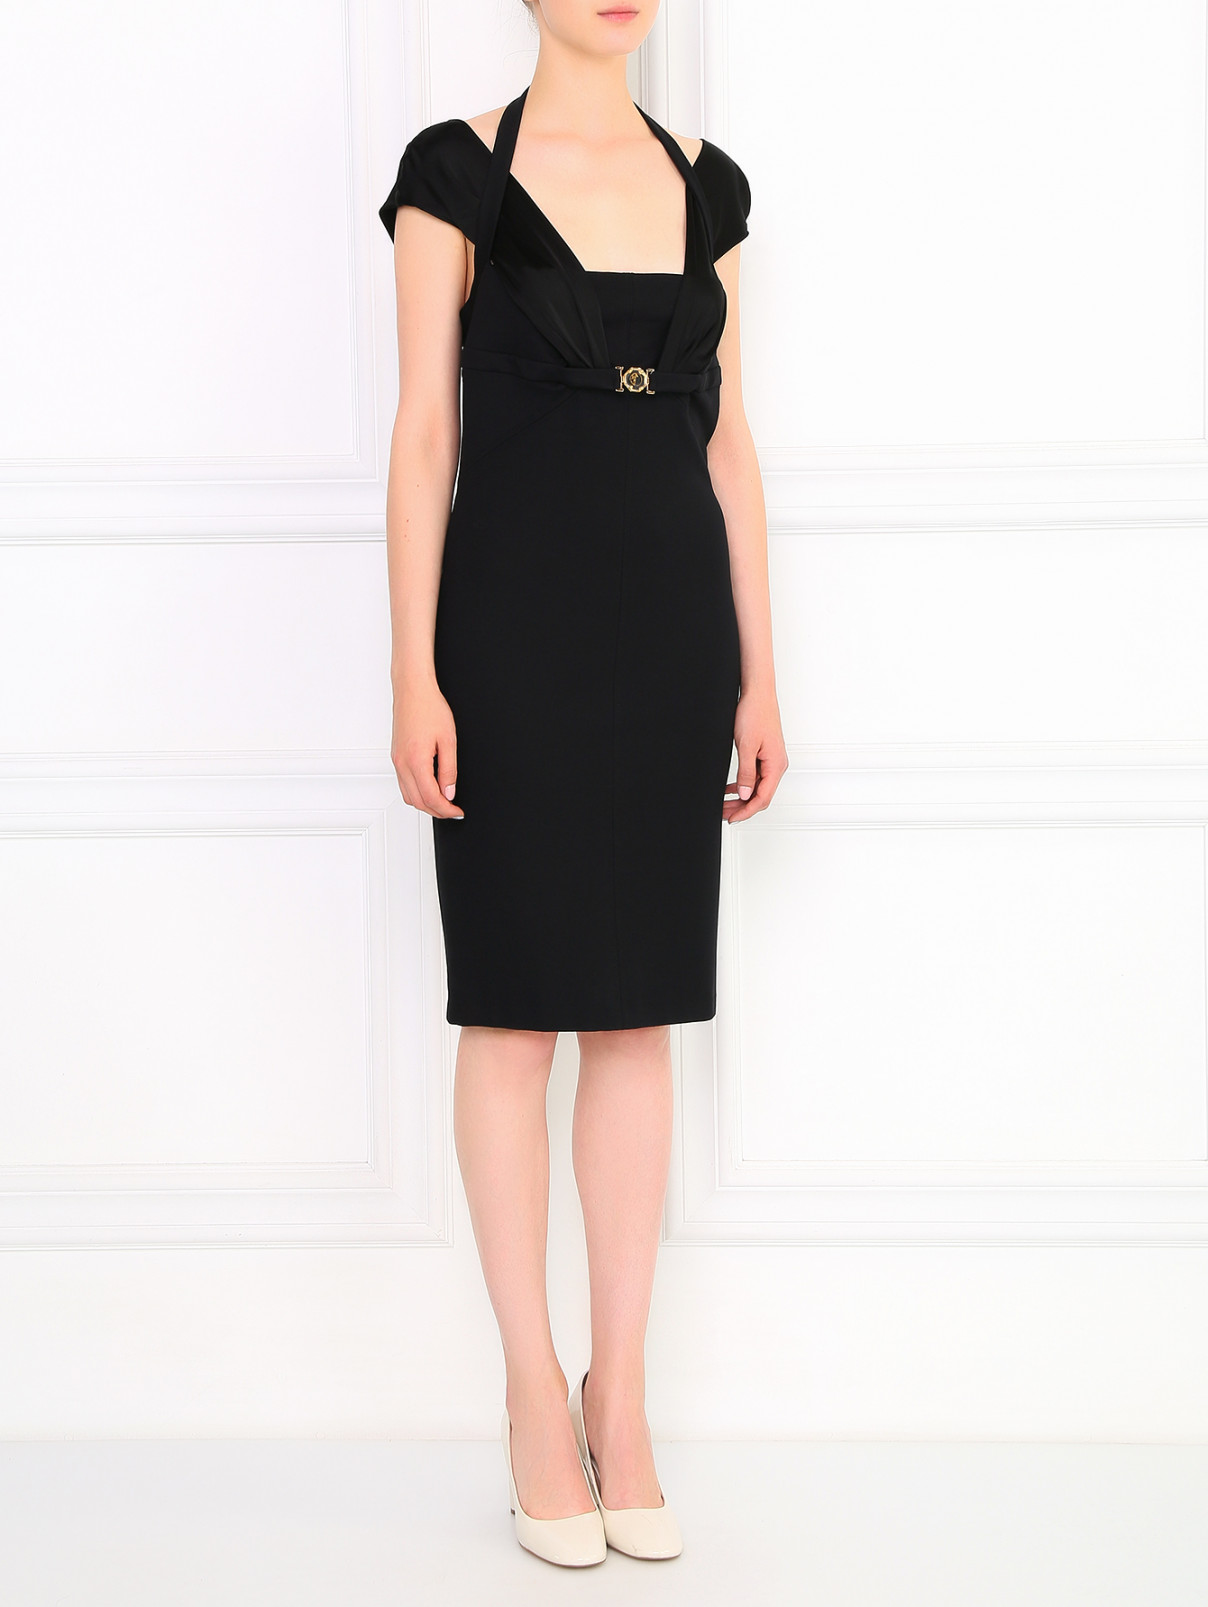 Трикотажное платье-мини на широких бретелях Versace Collection  –  Модель Общий вид  – Цвет:  Черный